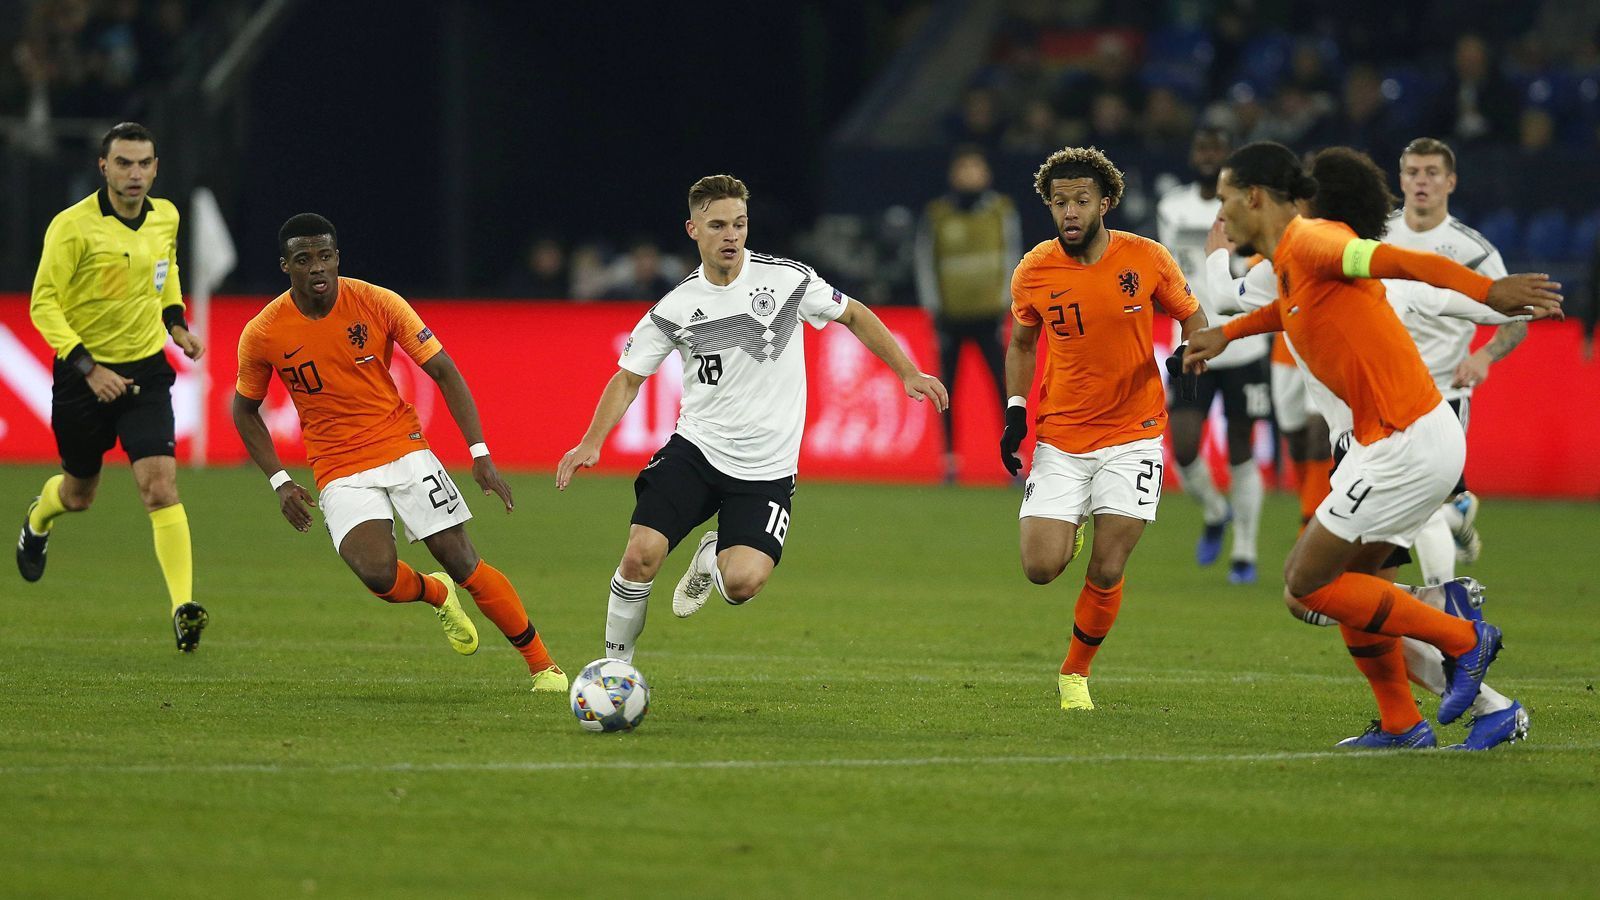 <strong>Deutschland – Niederlande 0:3 &amp; 2:2 (Nations League 2018/19)</strong><br>
                Im letzten Spiel des Jahres 2018 hat die Mannschaft von&nbsp; Joachim Löw lange den Sieg vor Augen, führt mit 2:0 – doch am Ende steht ein Unentschieden. Damit kann die peinliche Pleite aus dem Hinspiel nicht ausgemerzt werde – dies ist die&nbsp;höchste Niederlage überhaupt gegen "Oranje". Deutschland wird in der Gruppe hinter Frankreich sogar nur Dritter und damit Letzter.
